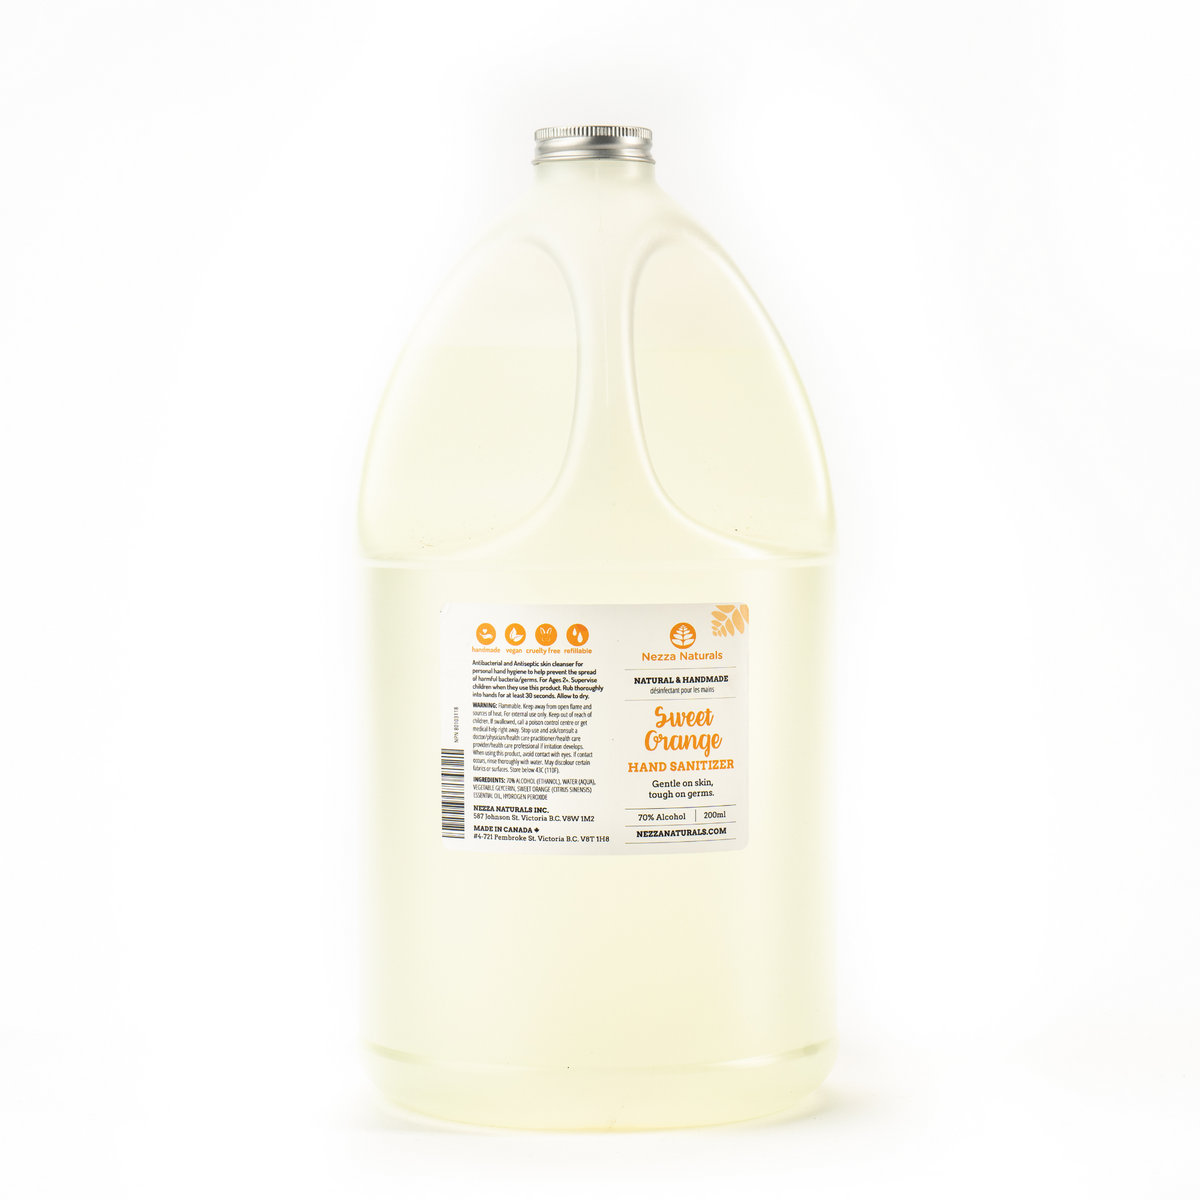 Hand Sanitizer Spray in Sweet Orange 4L